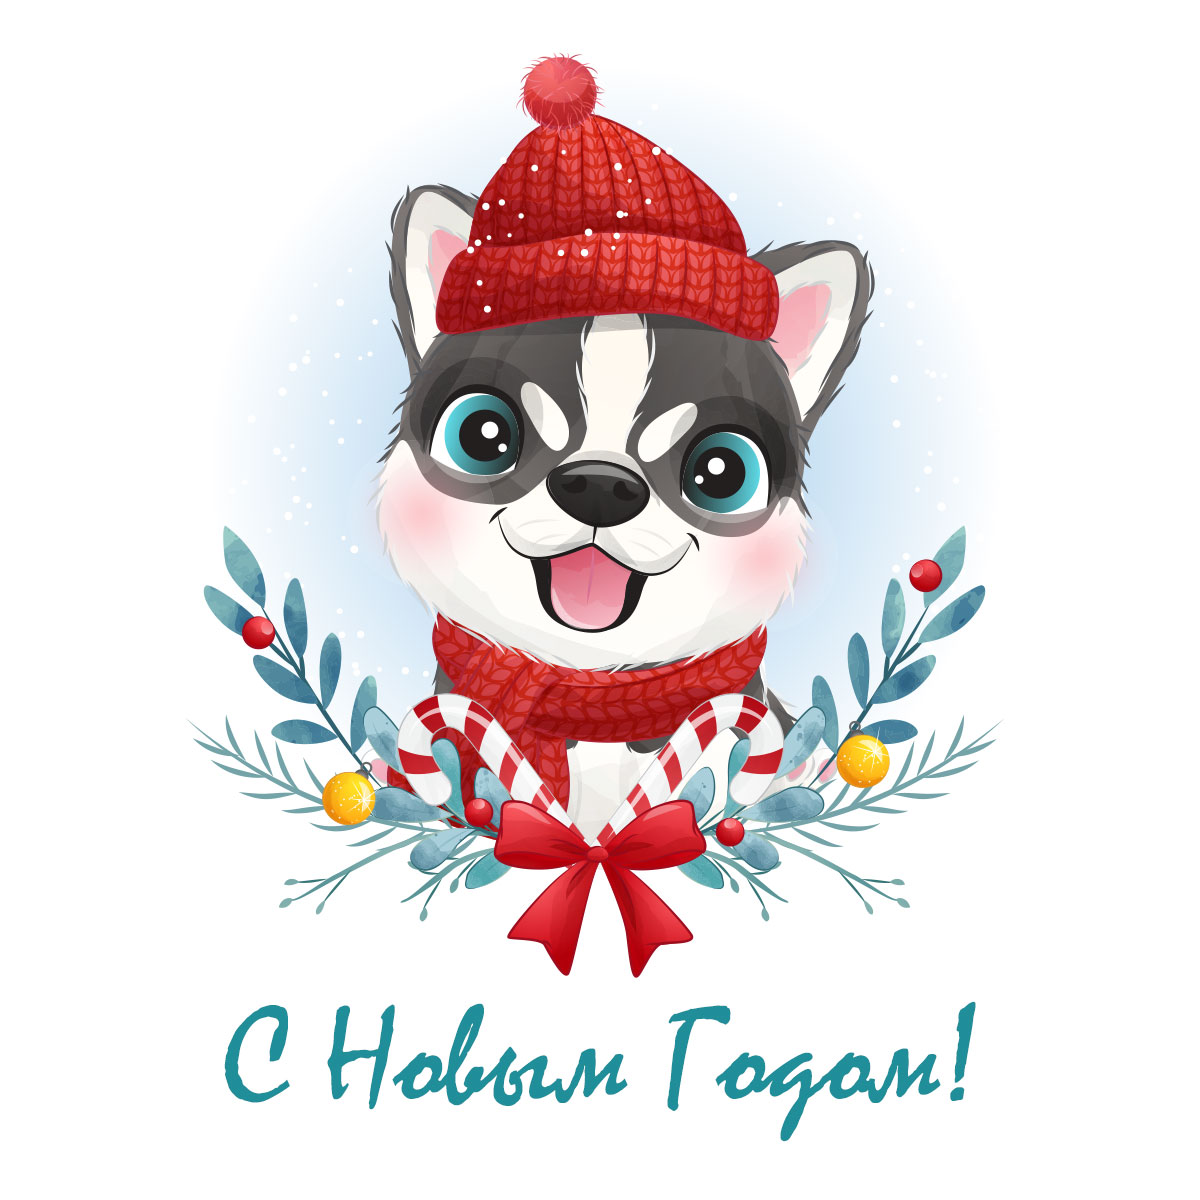 Открытка для детей на новый год - портрет щенка хаски в красной шапке.